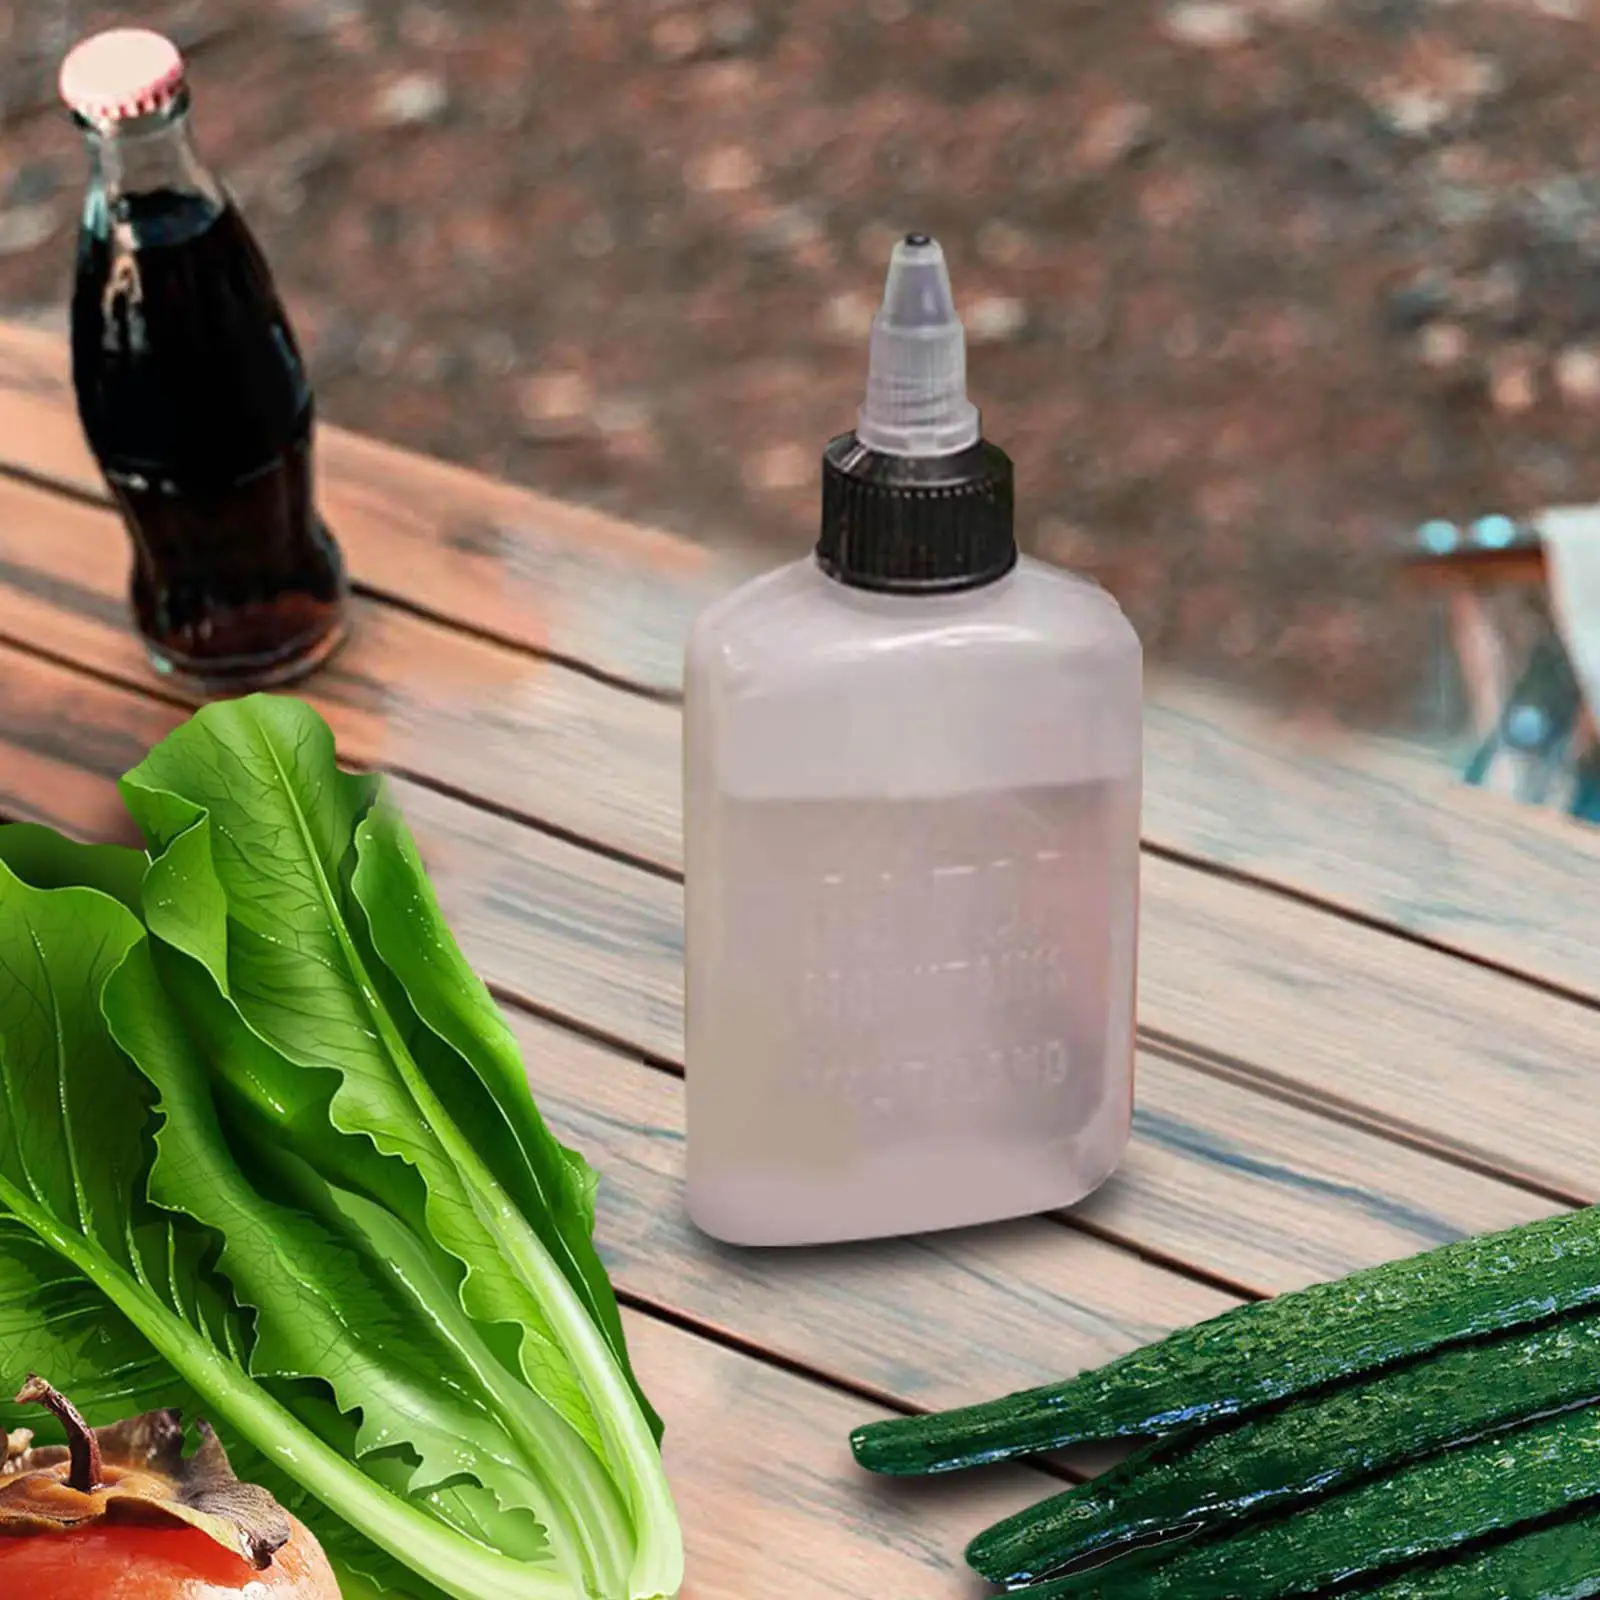 Portable Oil Bottle Leakproof Lightweight Sauce Vinegar for 